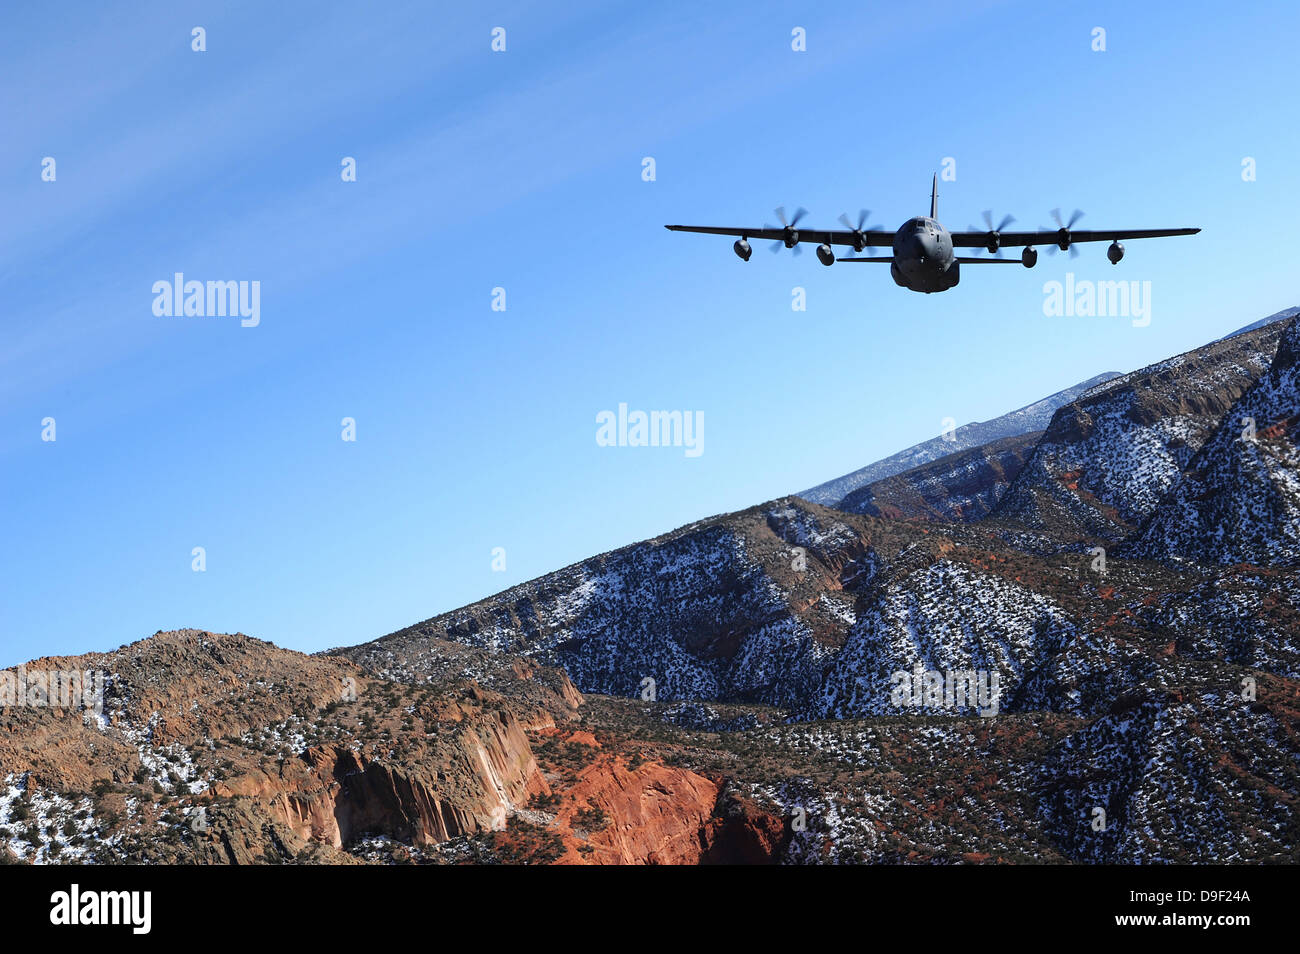 4 gennaio 2012 - UN MC-130J combattere ombra II aeromobili vola sopra i cieli del New Mexico. Foto Stock